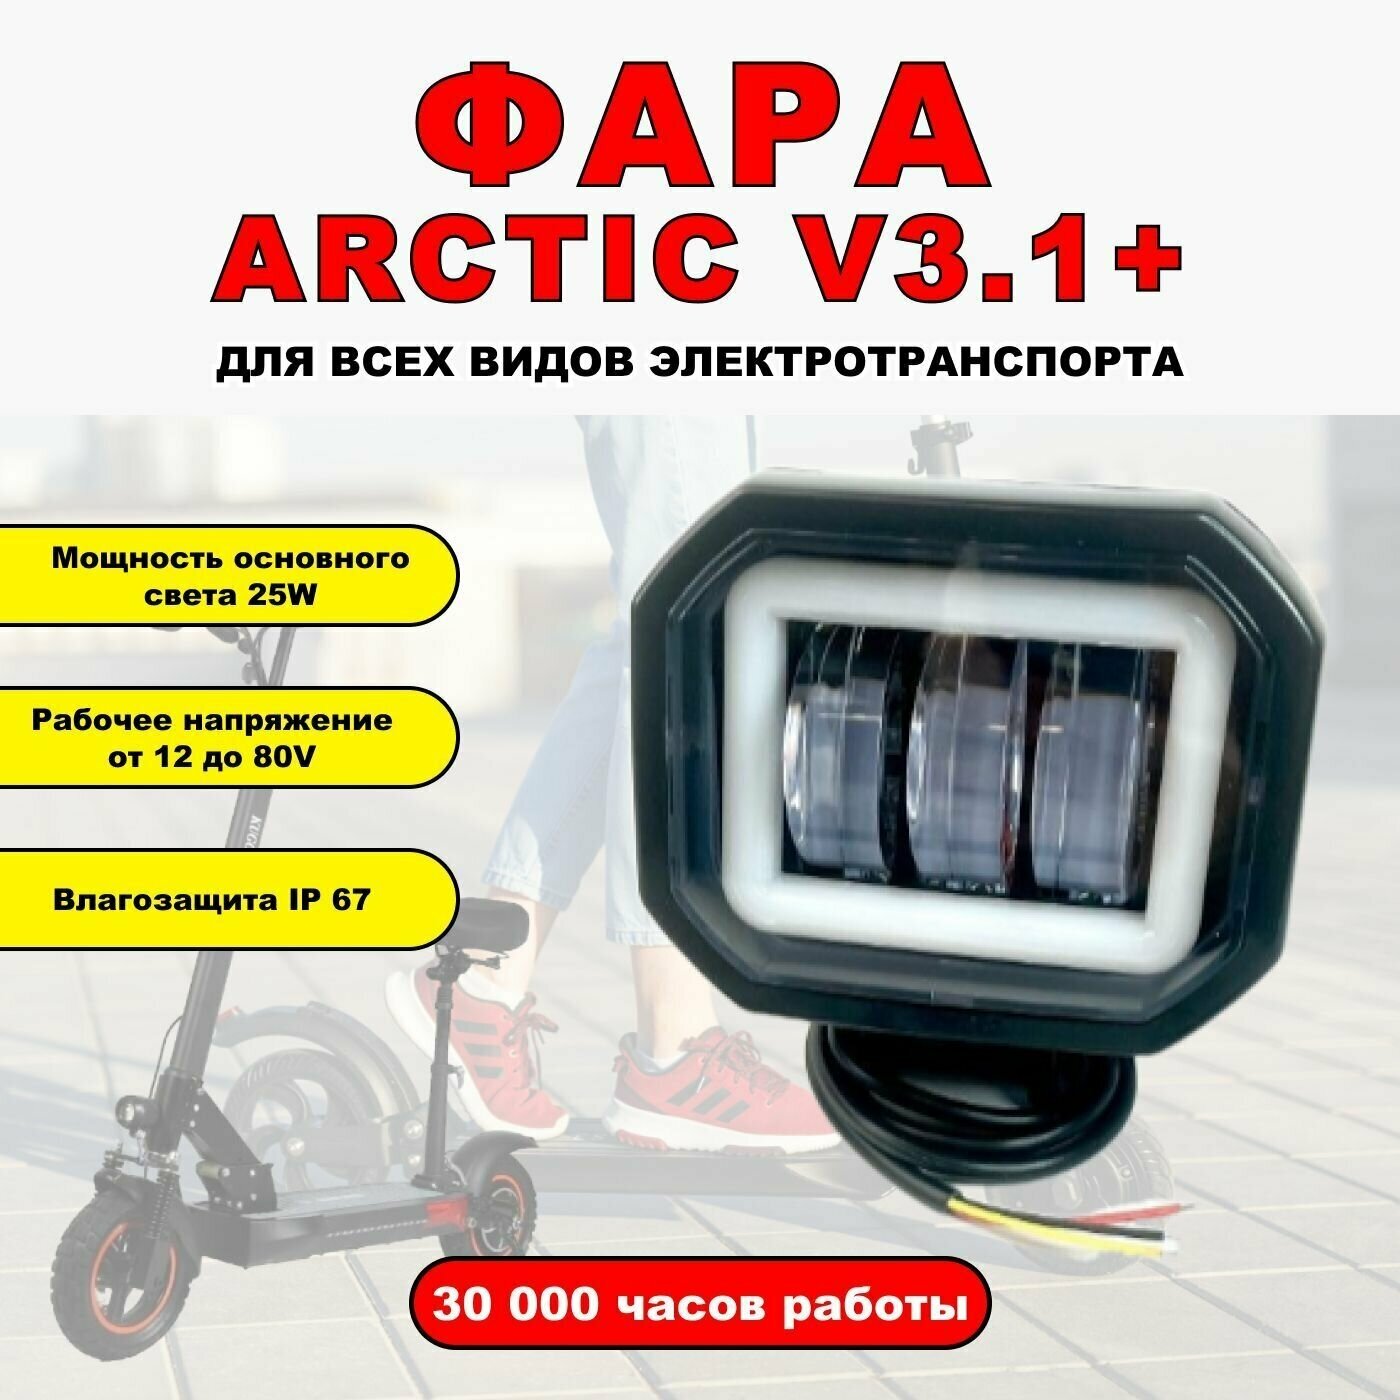 Противотуманная светодиодная фара Arctic v3.0+ для всех видов электротранспорта / Прямоугольной формы /2 диода птф дхо